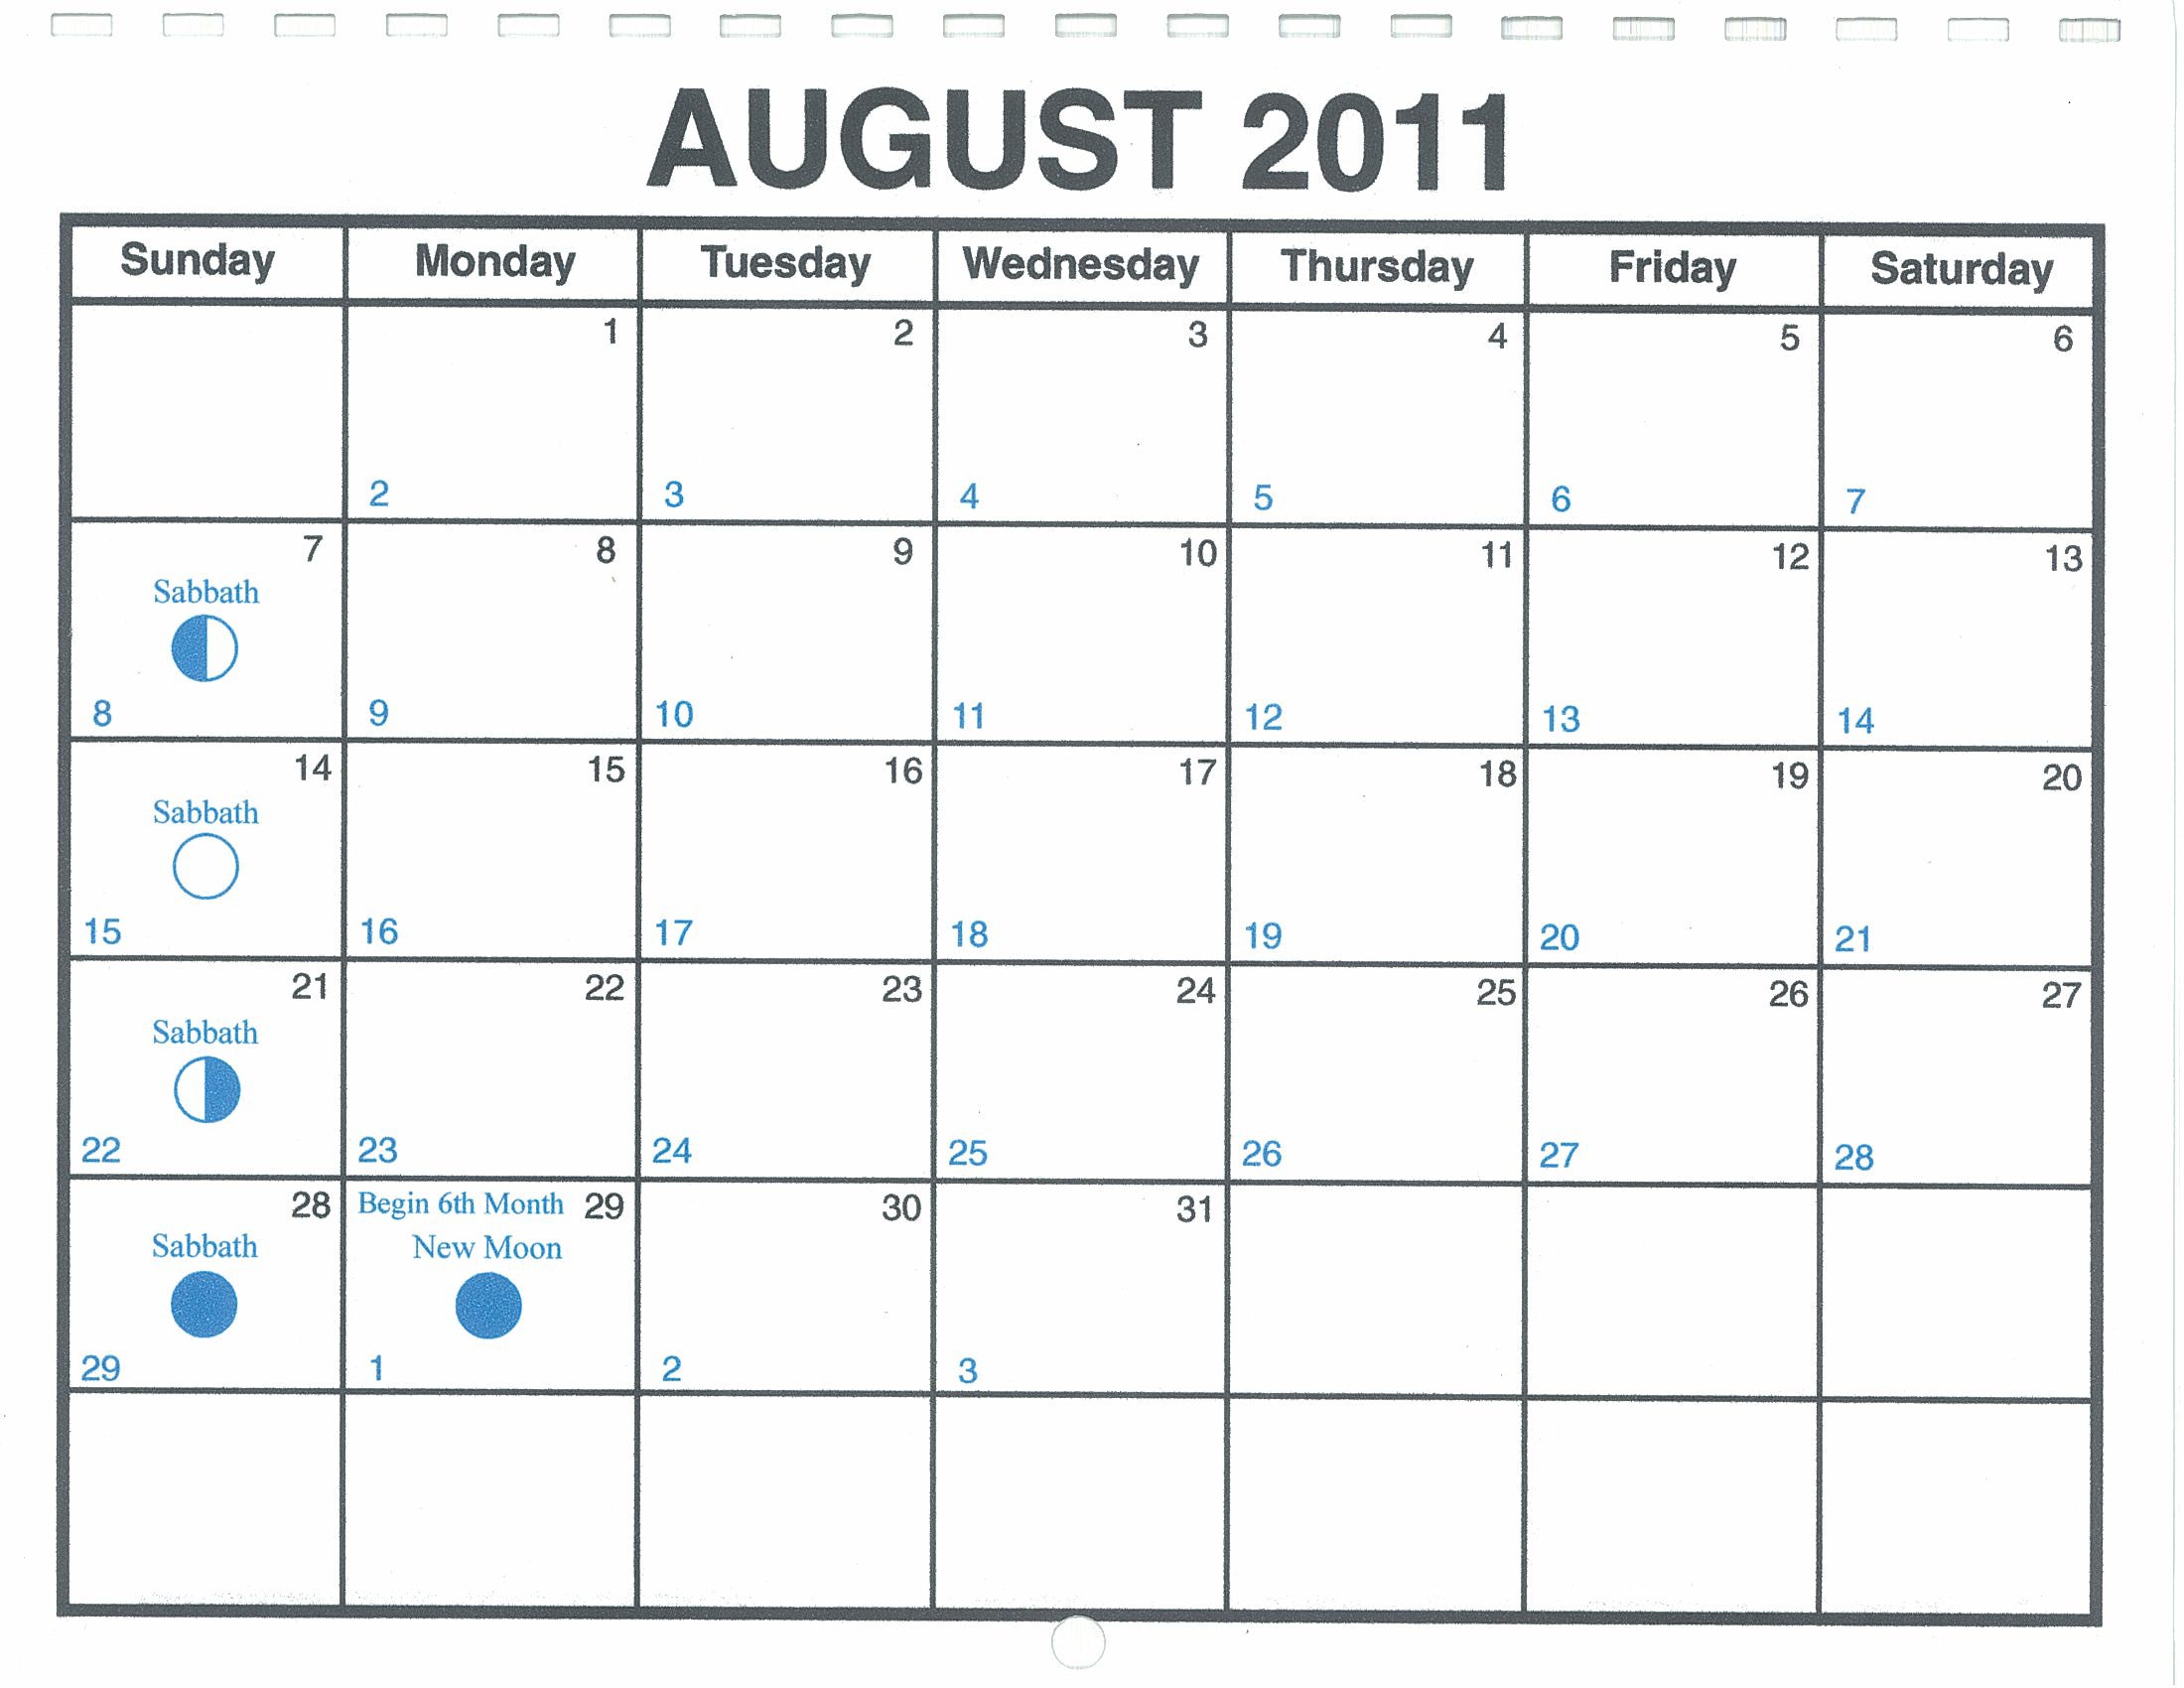 August Lunar Calendar — One Yahweh